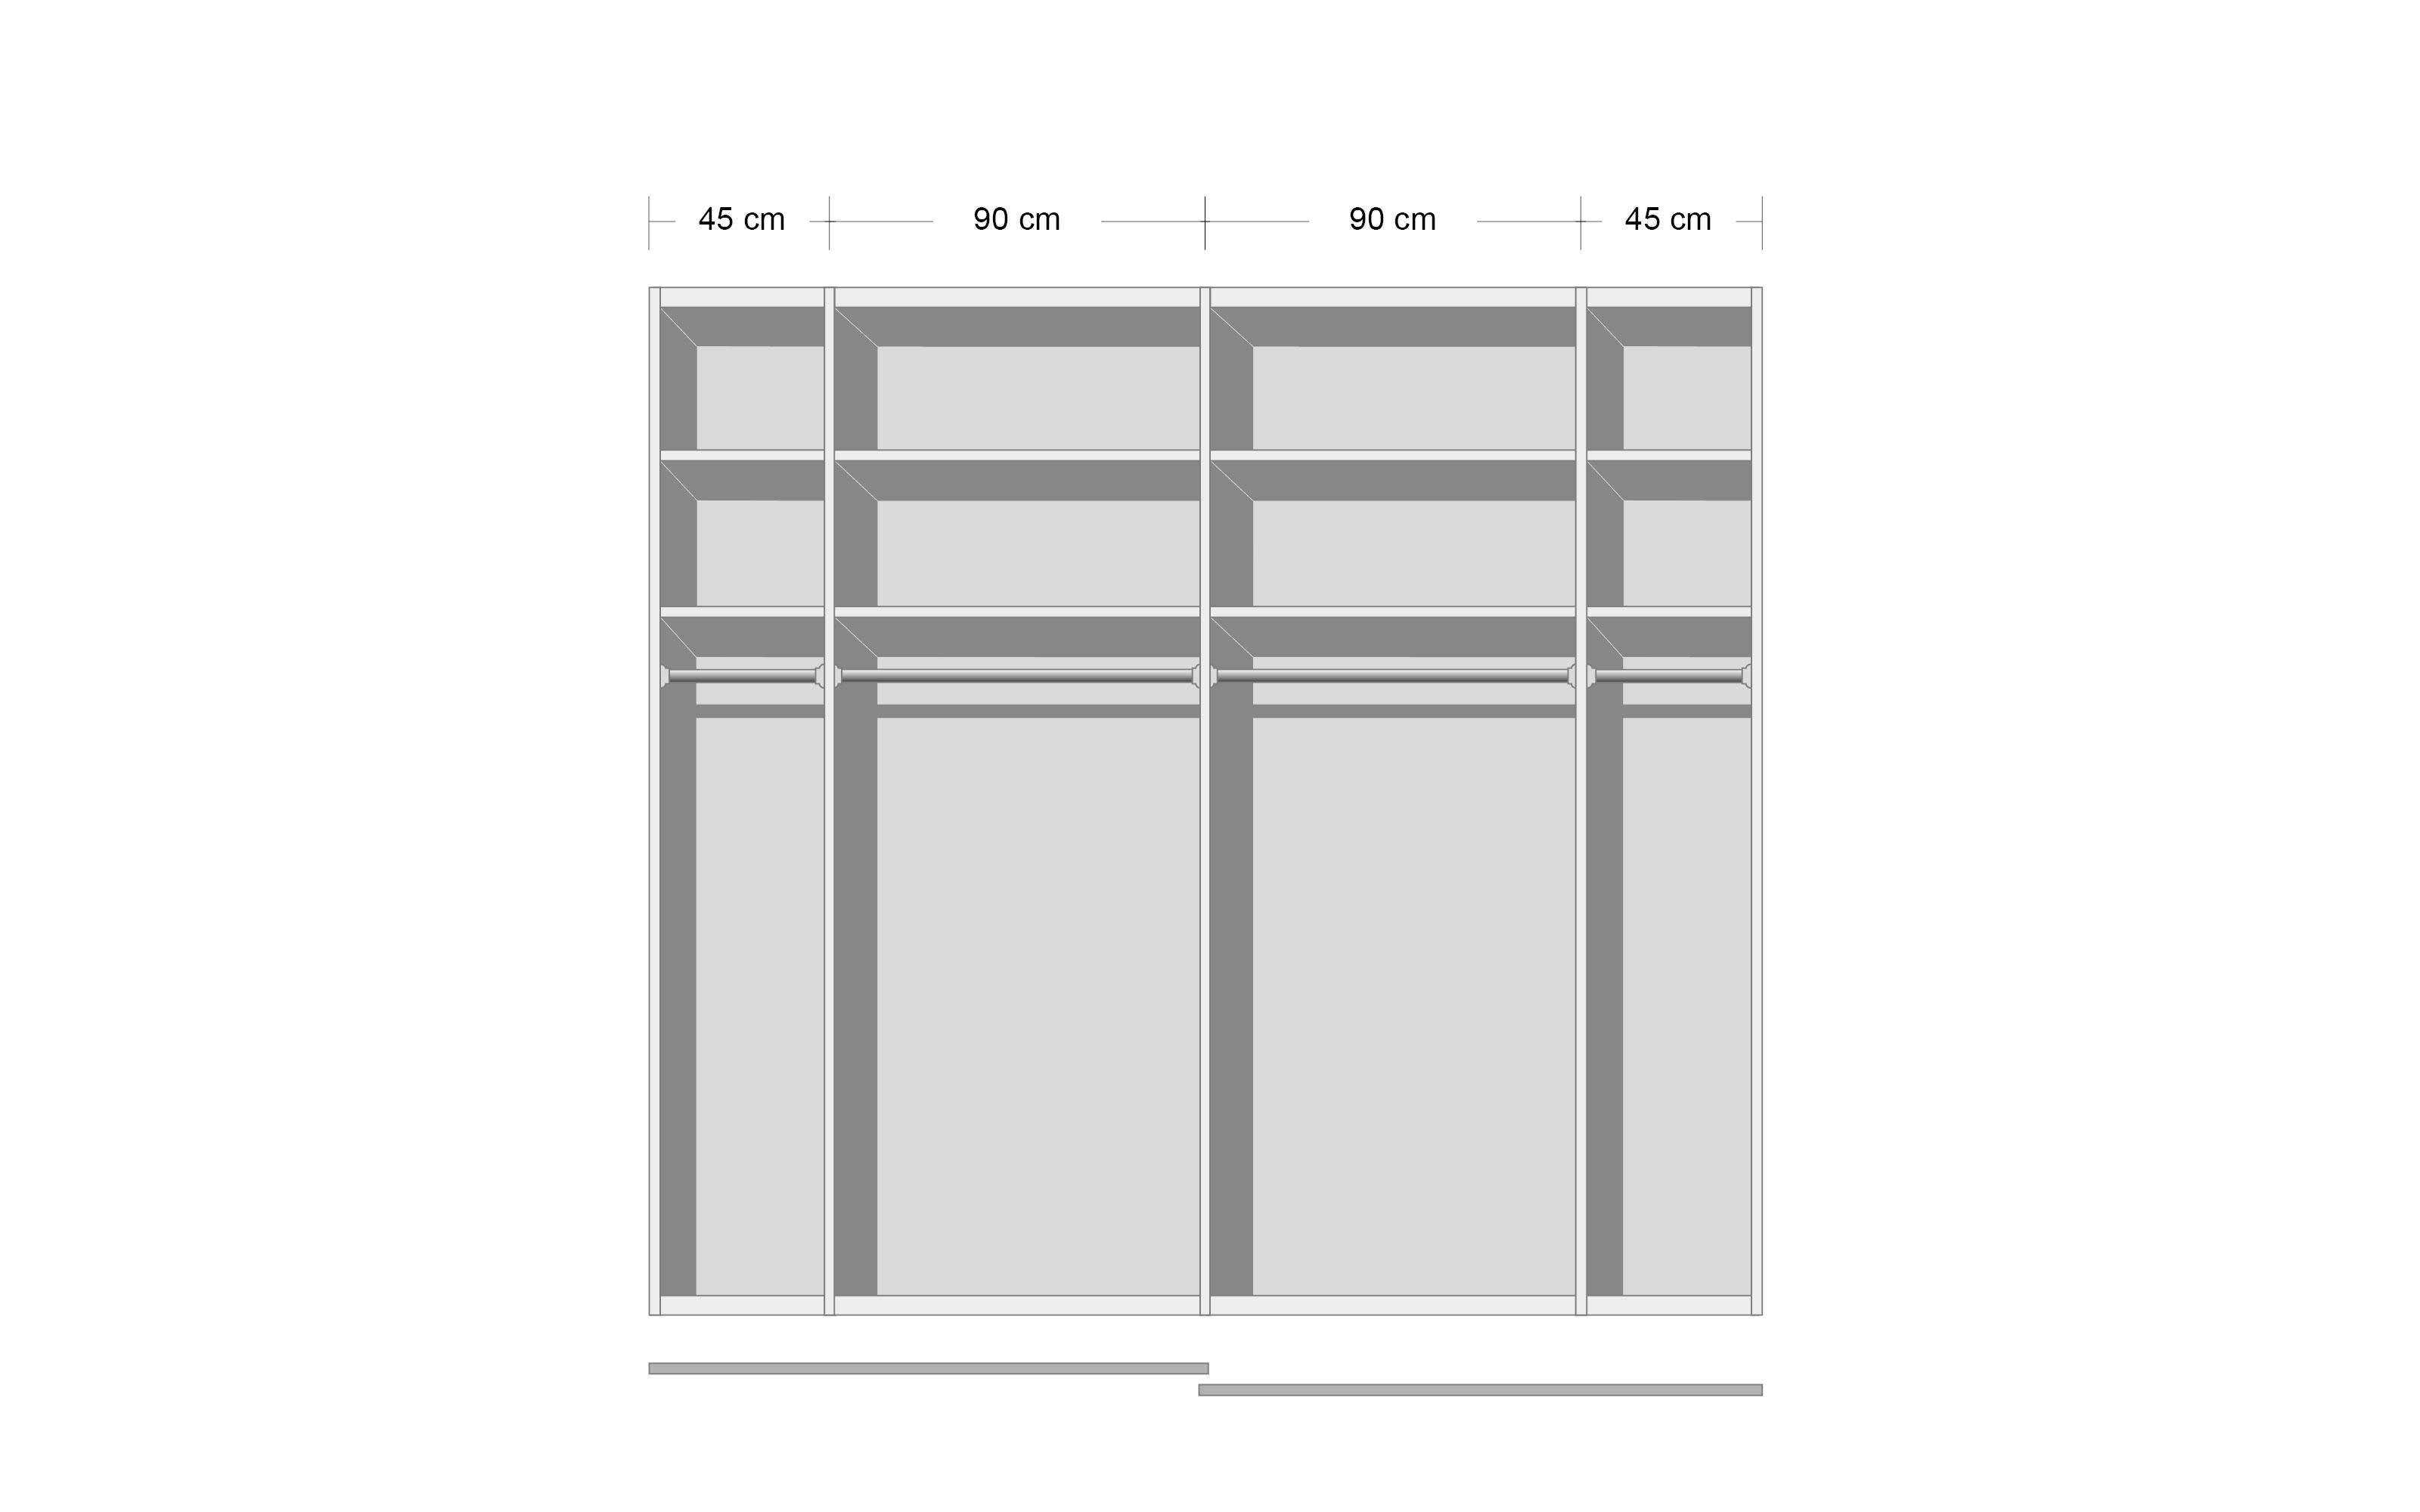 Schlafzimmer Madea, alpinweiß/graphit, 180 x 200 cm, Schrank 271 x 223 cm